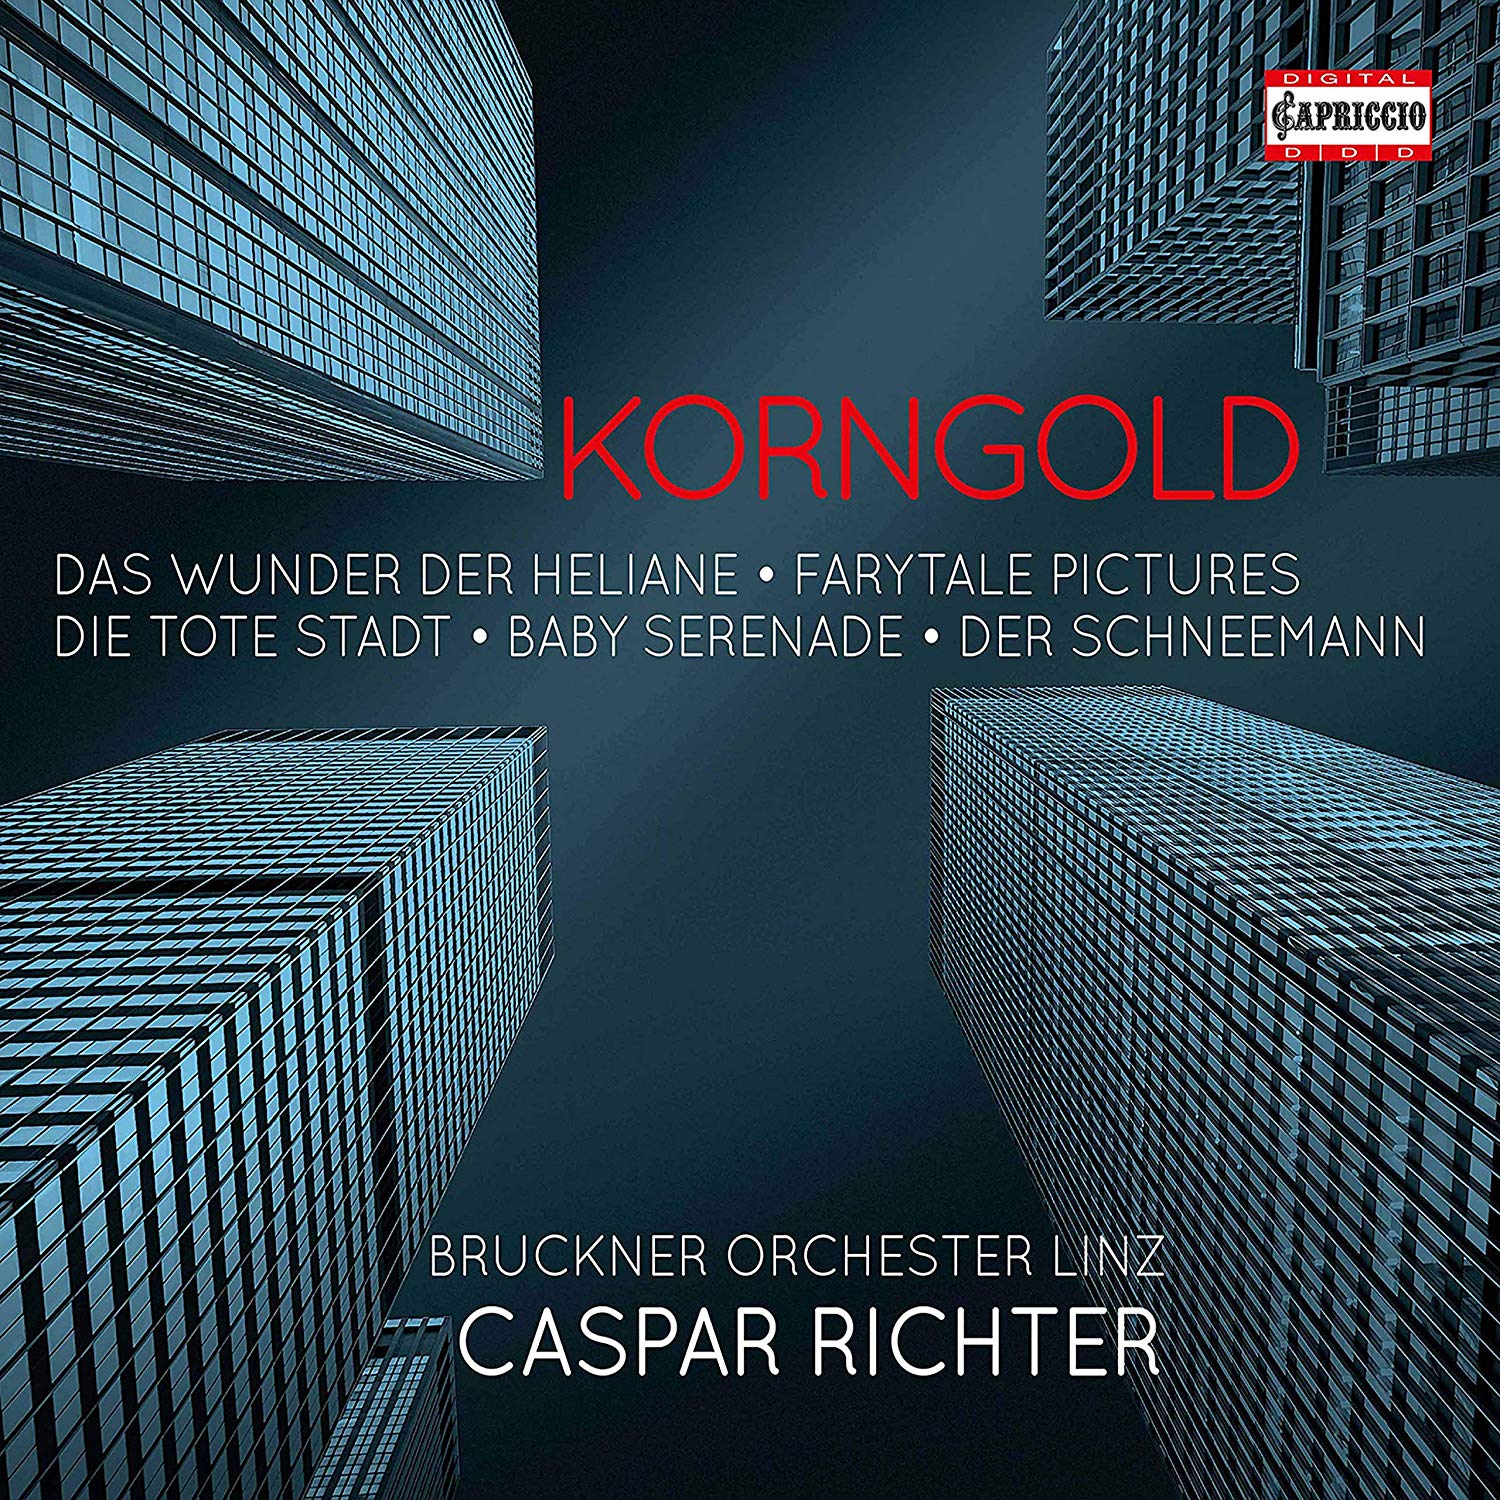 Audio Cd Erich Wolfgang Korngold - Werke (4 Cd) NUOVO SIGILLATO, EDIZIONE DEL 18/02/2020 SUBITO DISPONIBILE